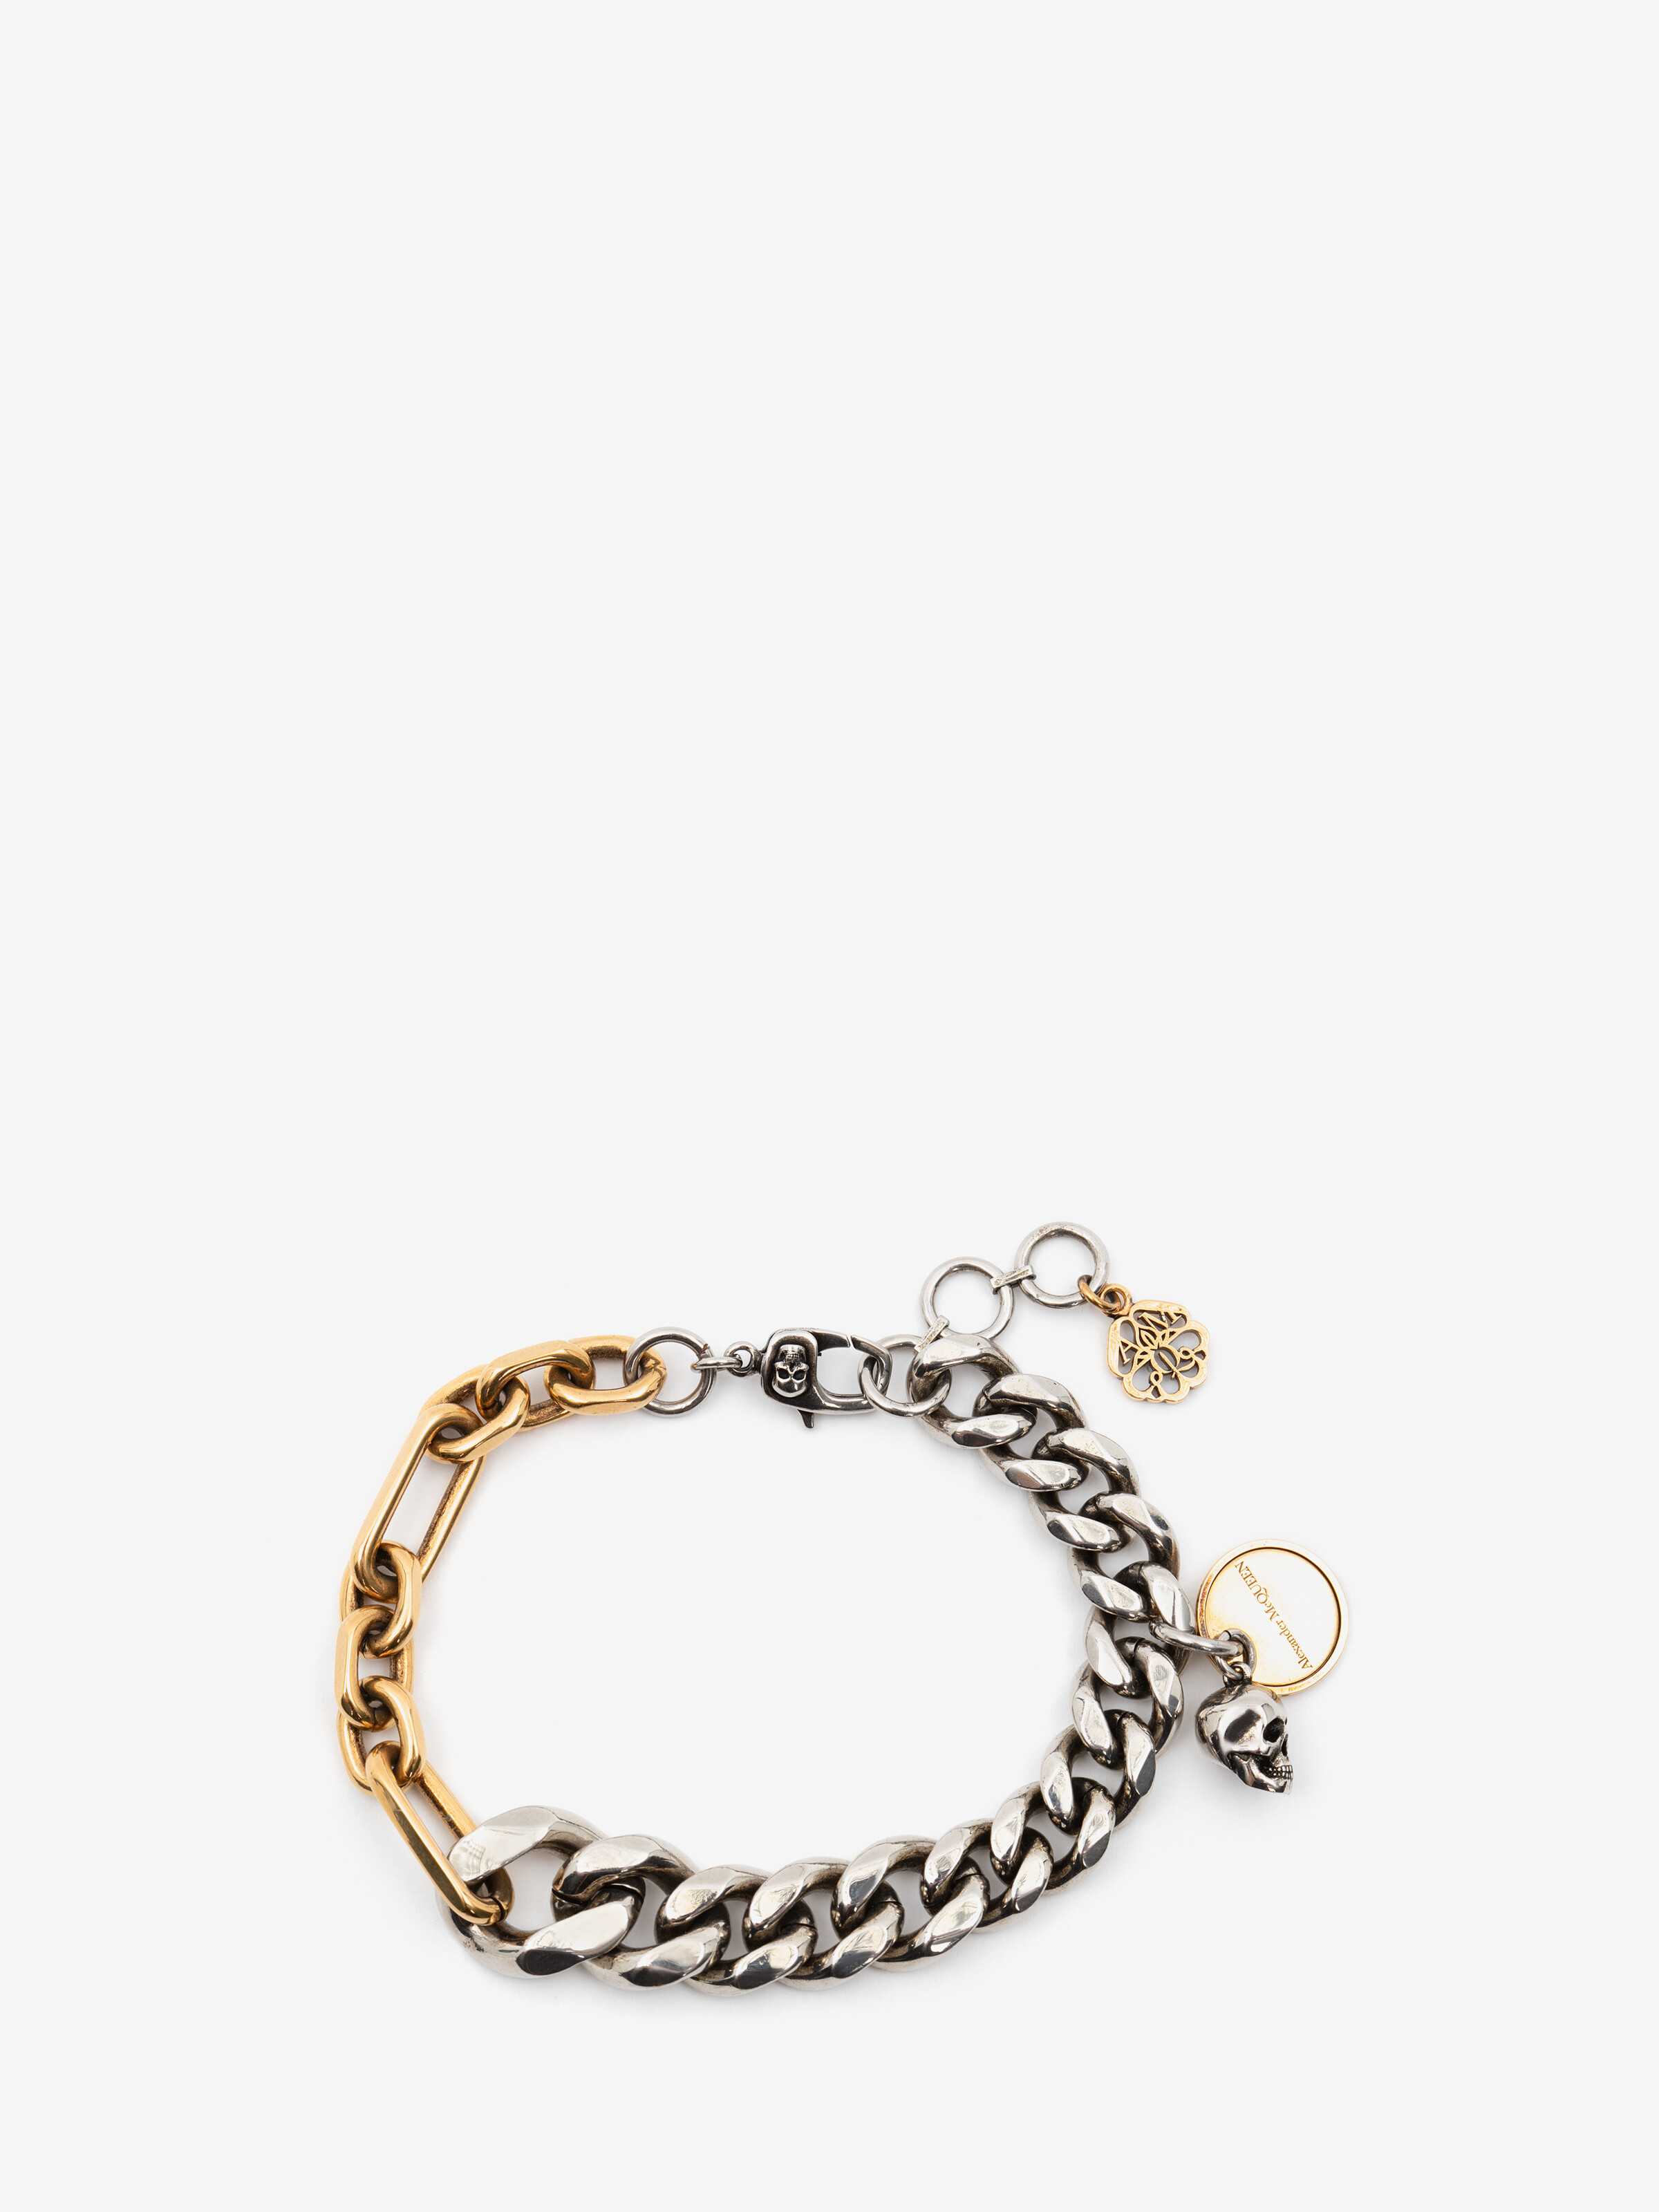 Chain and Skull Bracelet